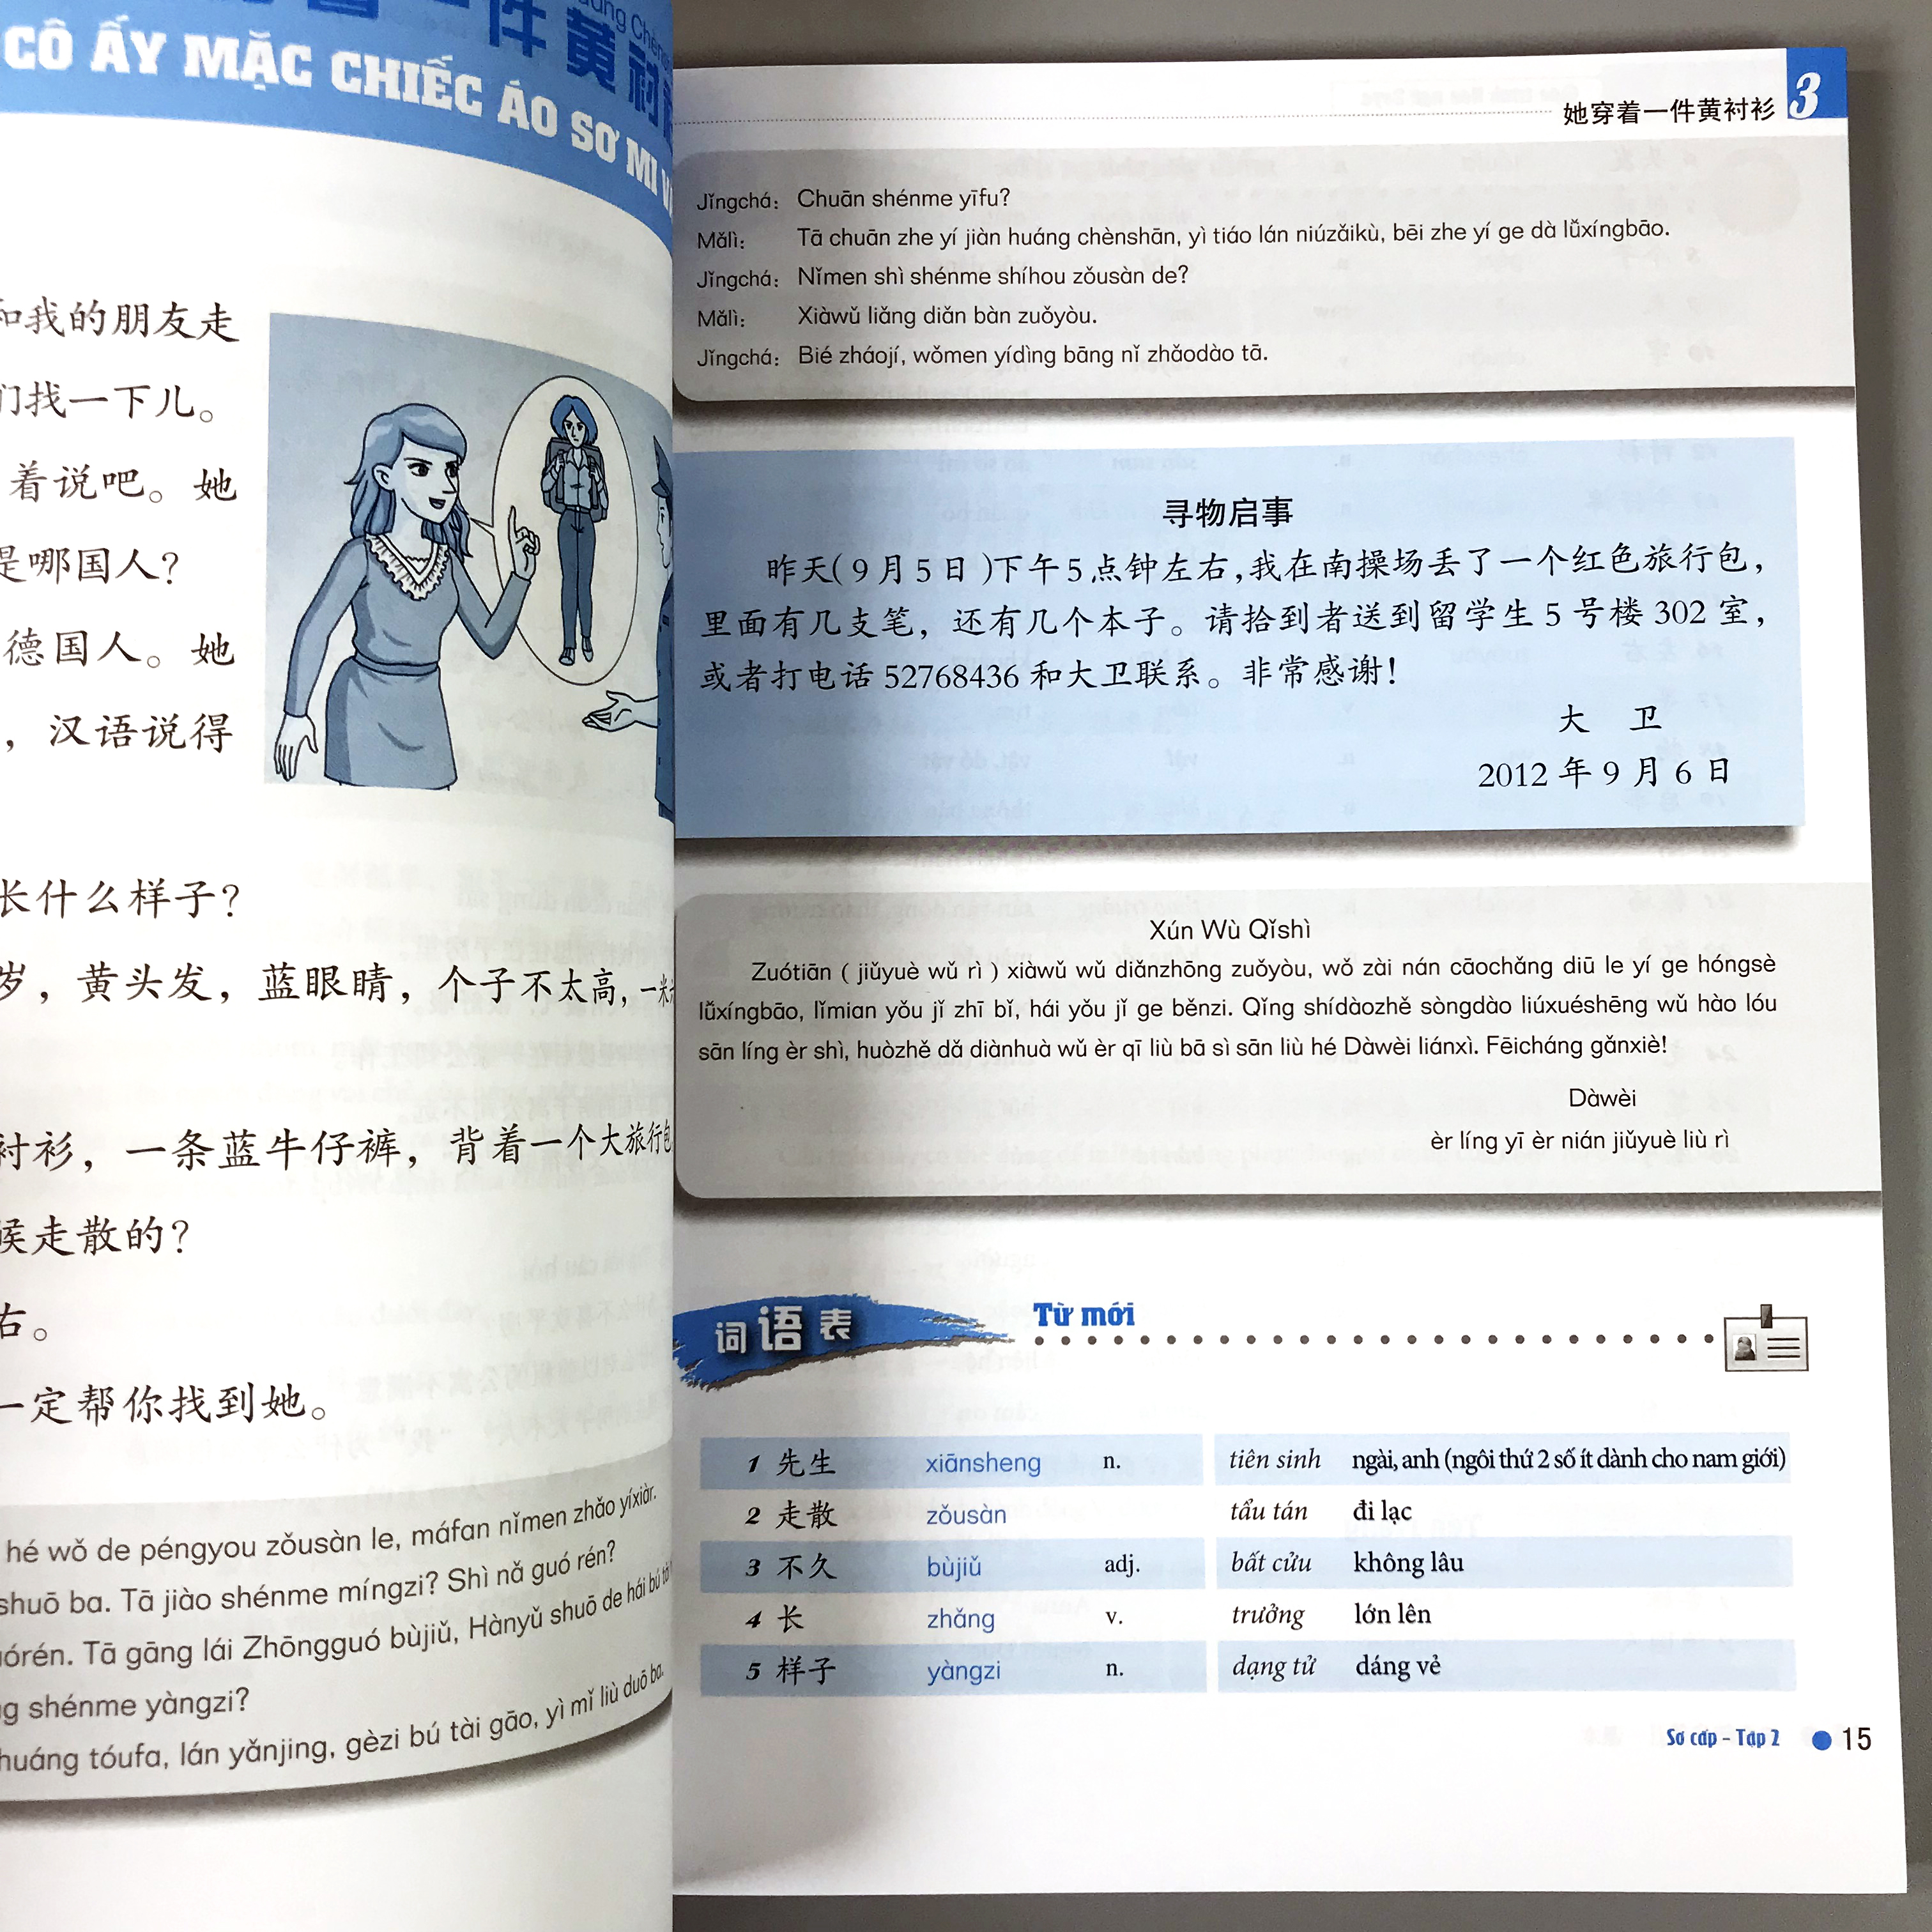 Combo 3 cuốn: Giáo trình Hán ngữ BOYA sơ cấp tập 1 + Tập 2 + Theo giáo trình Hán ngữ BOYA - Sơ cấp 1